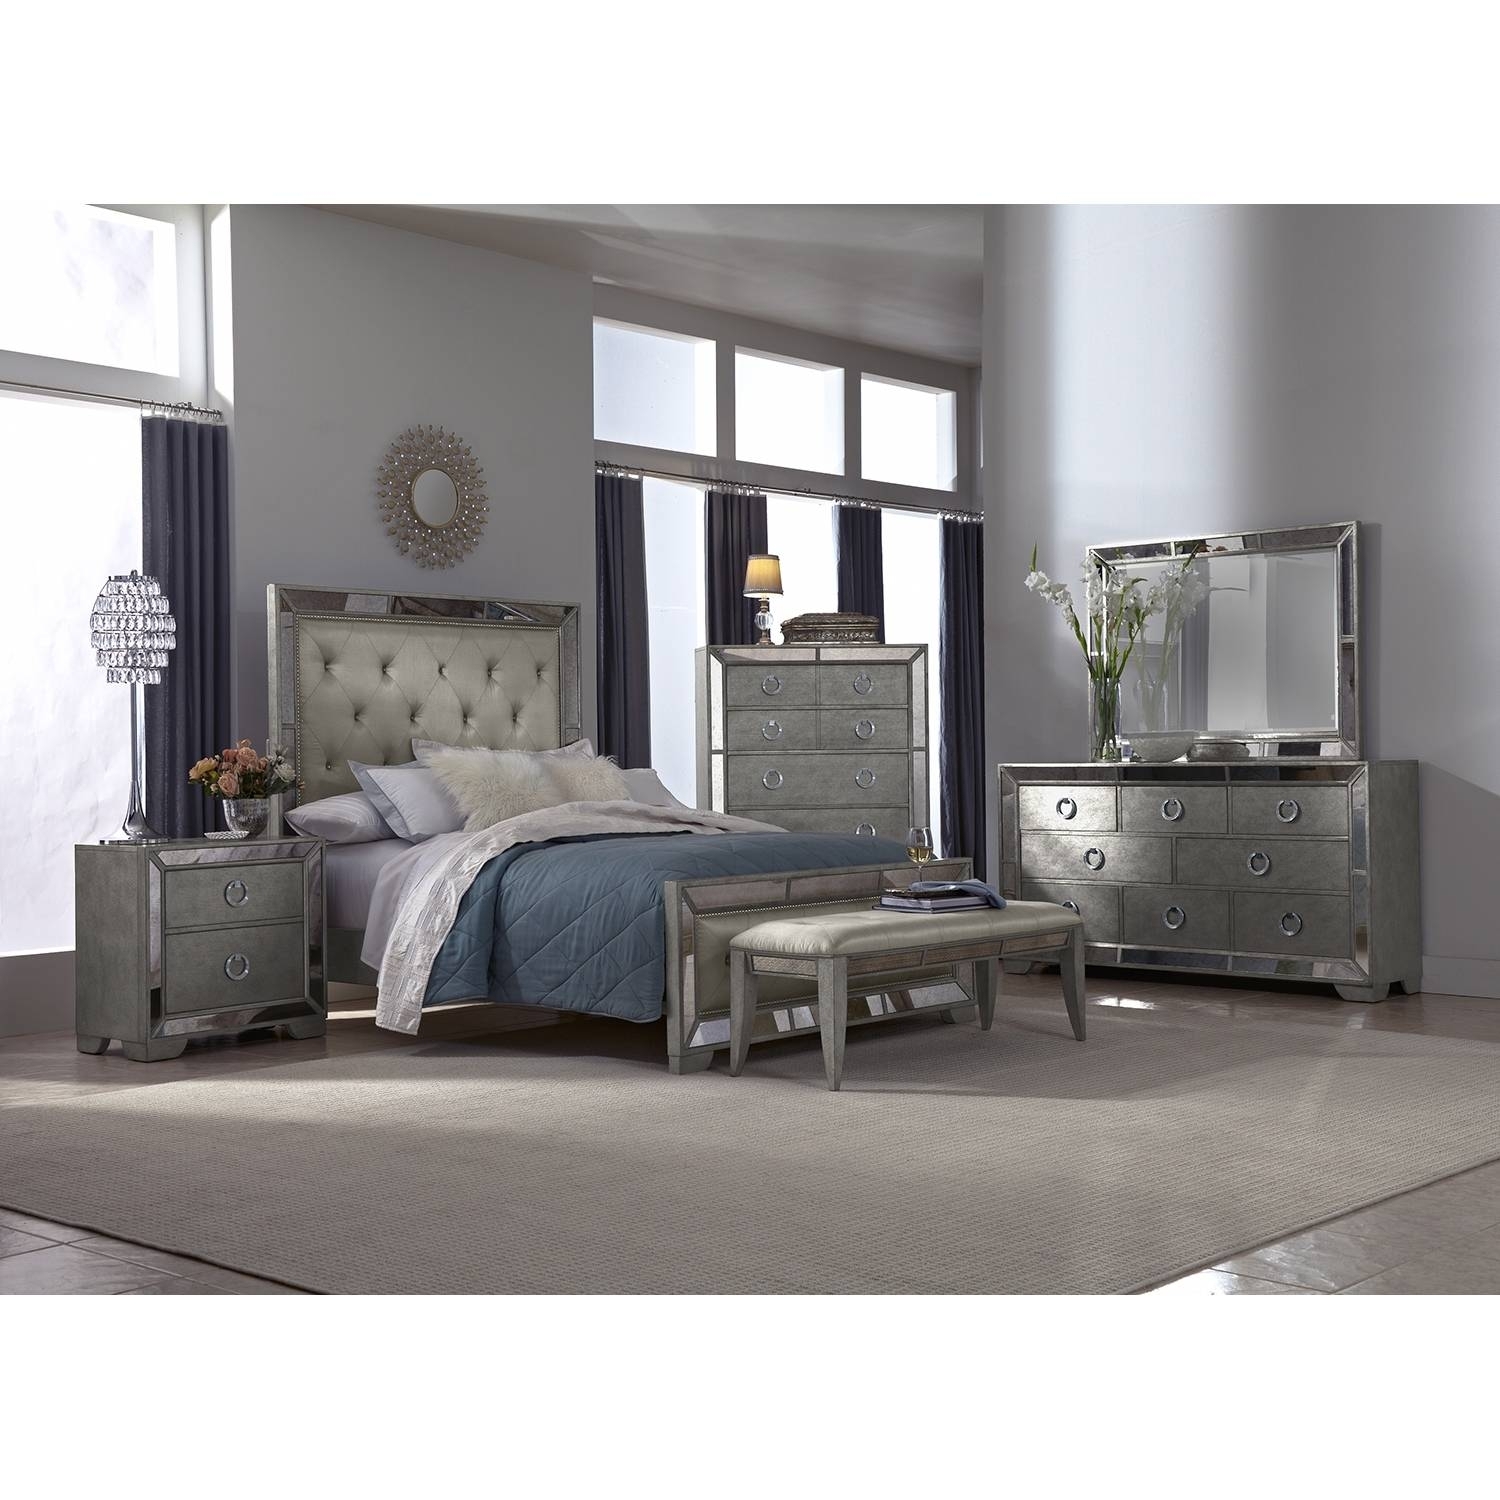 Silver bedroom furniture sets